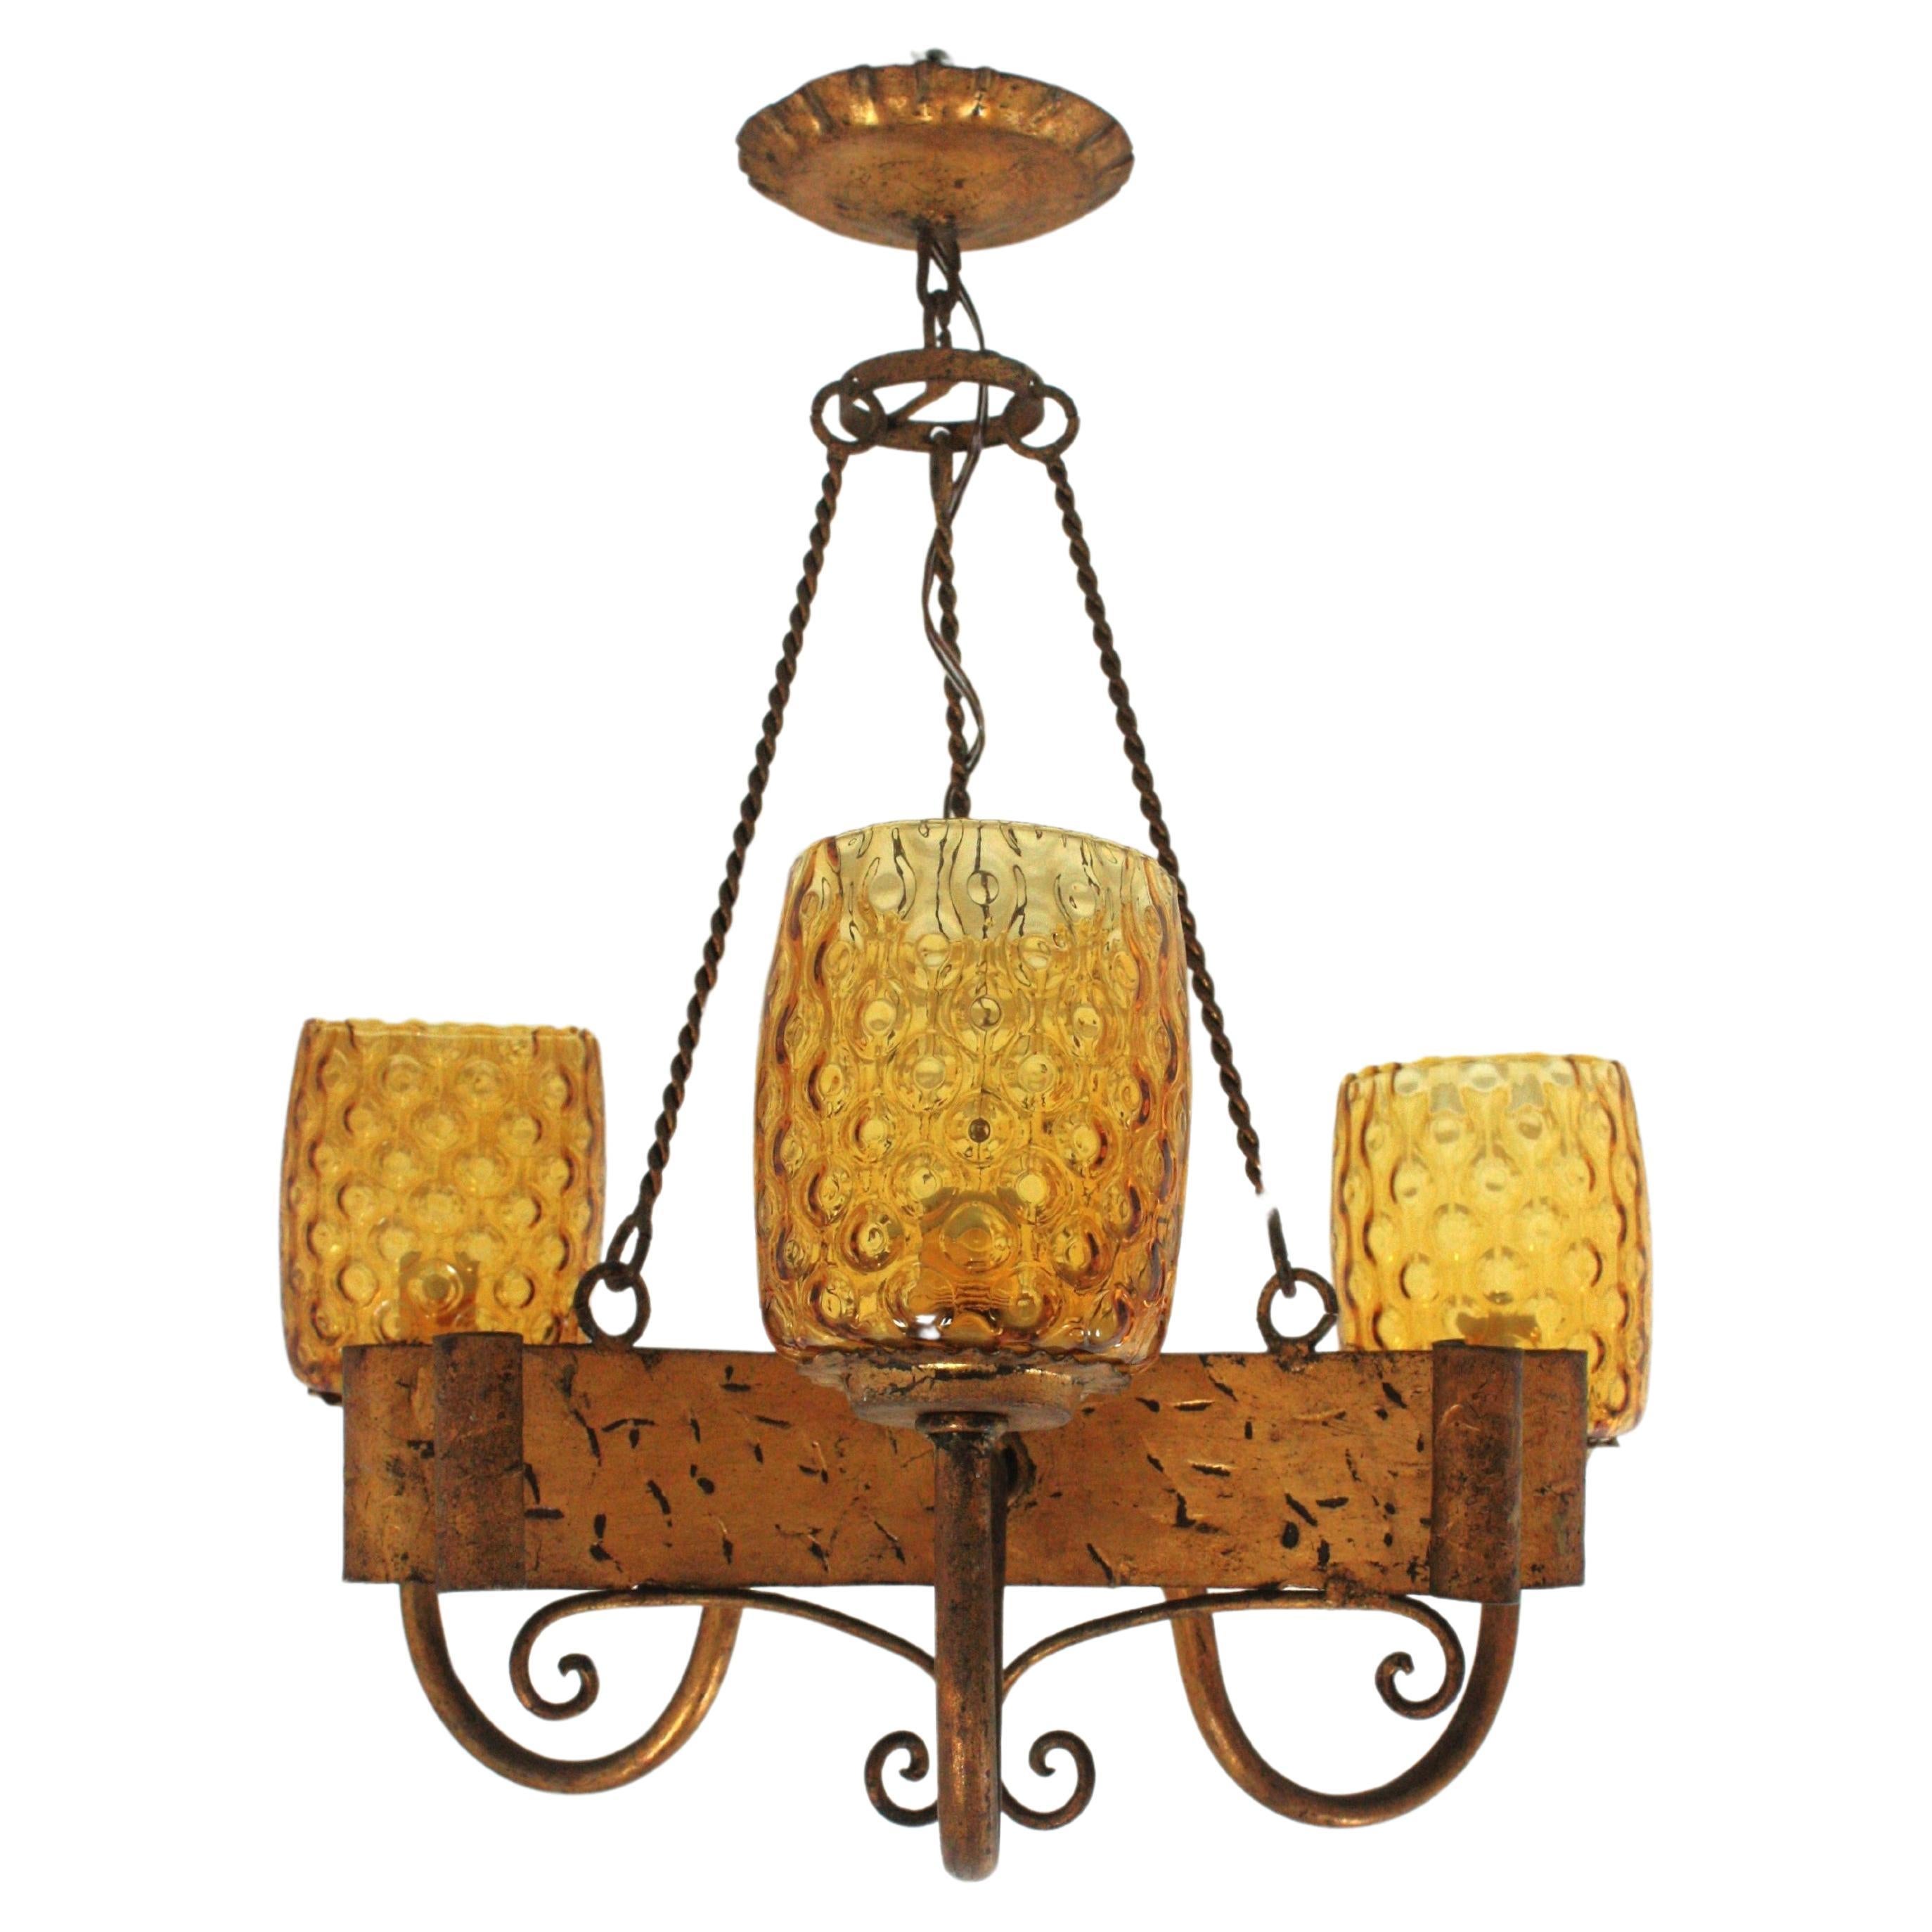 Lustre de style gothique espagnol avec abat-jour en verre ambré, fer forgé doré